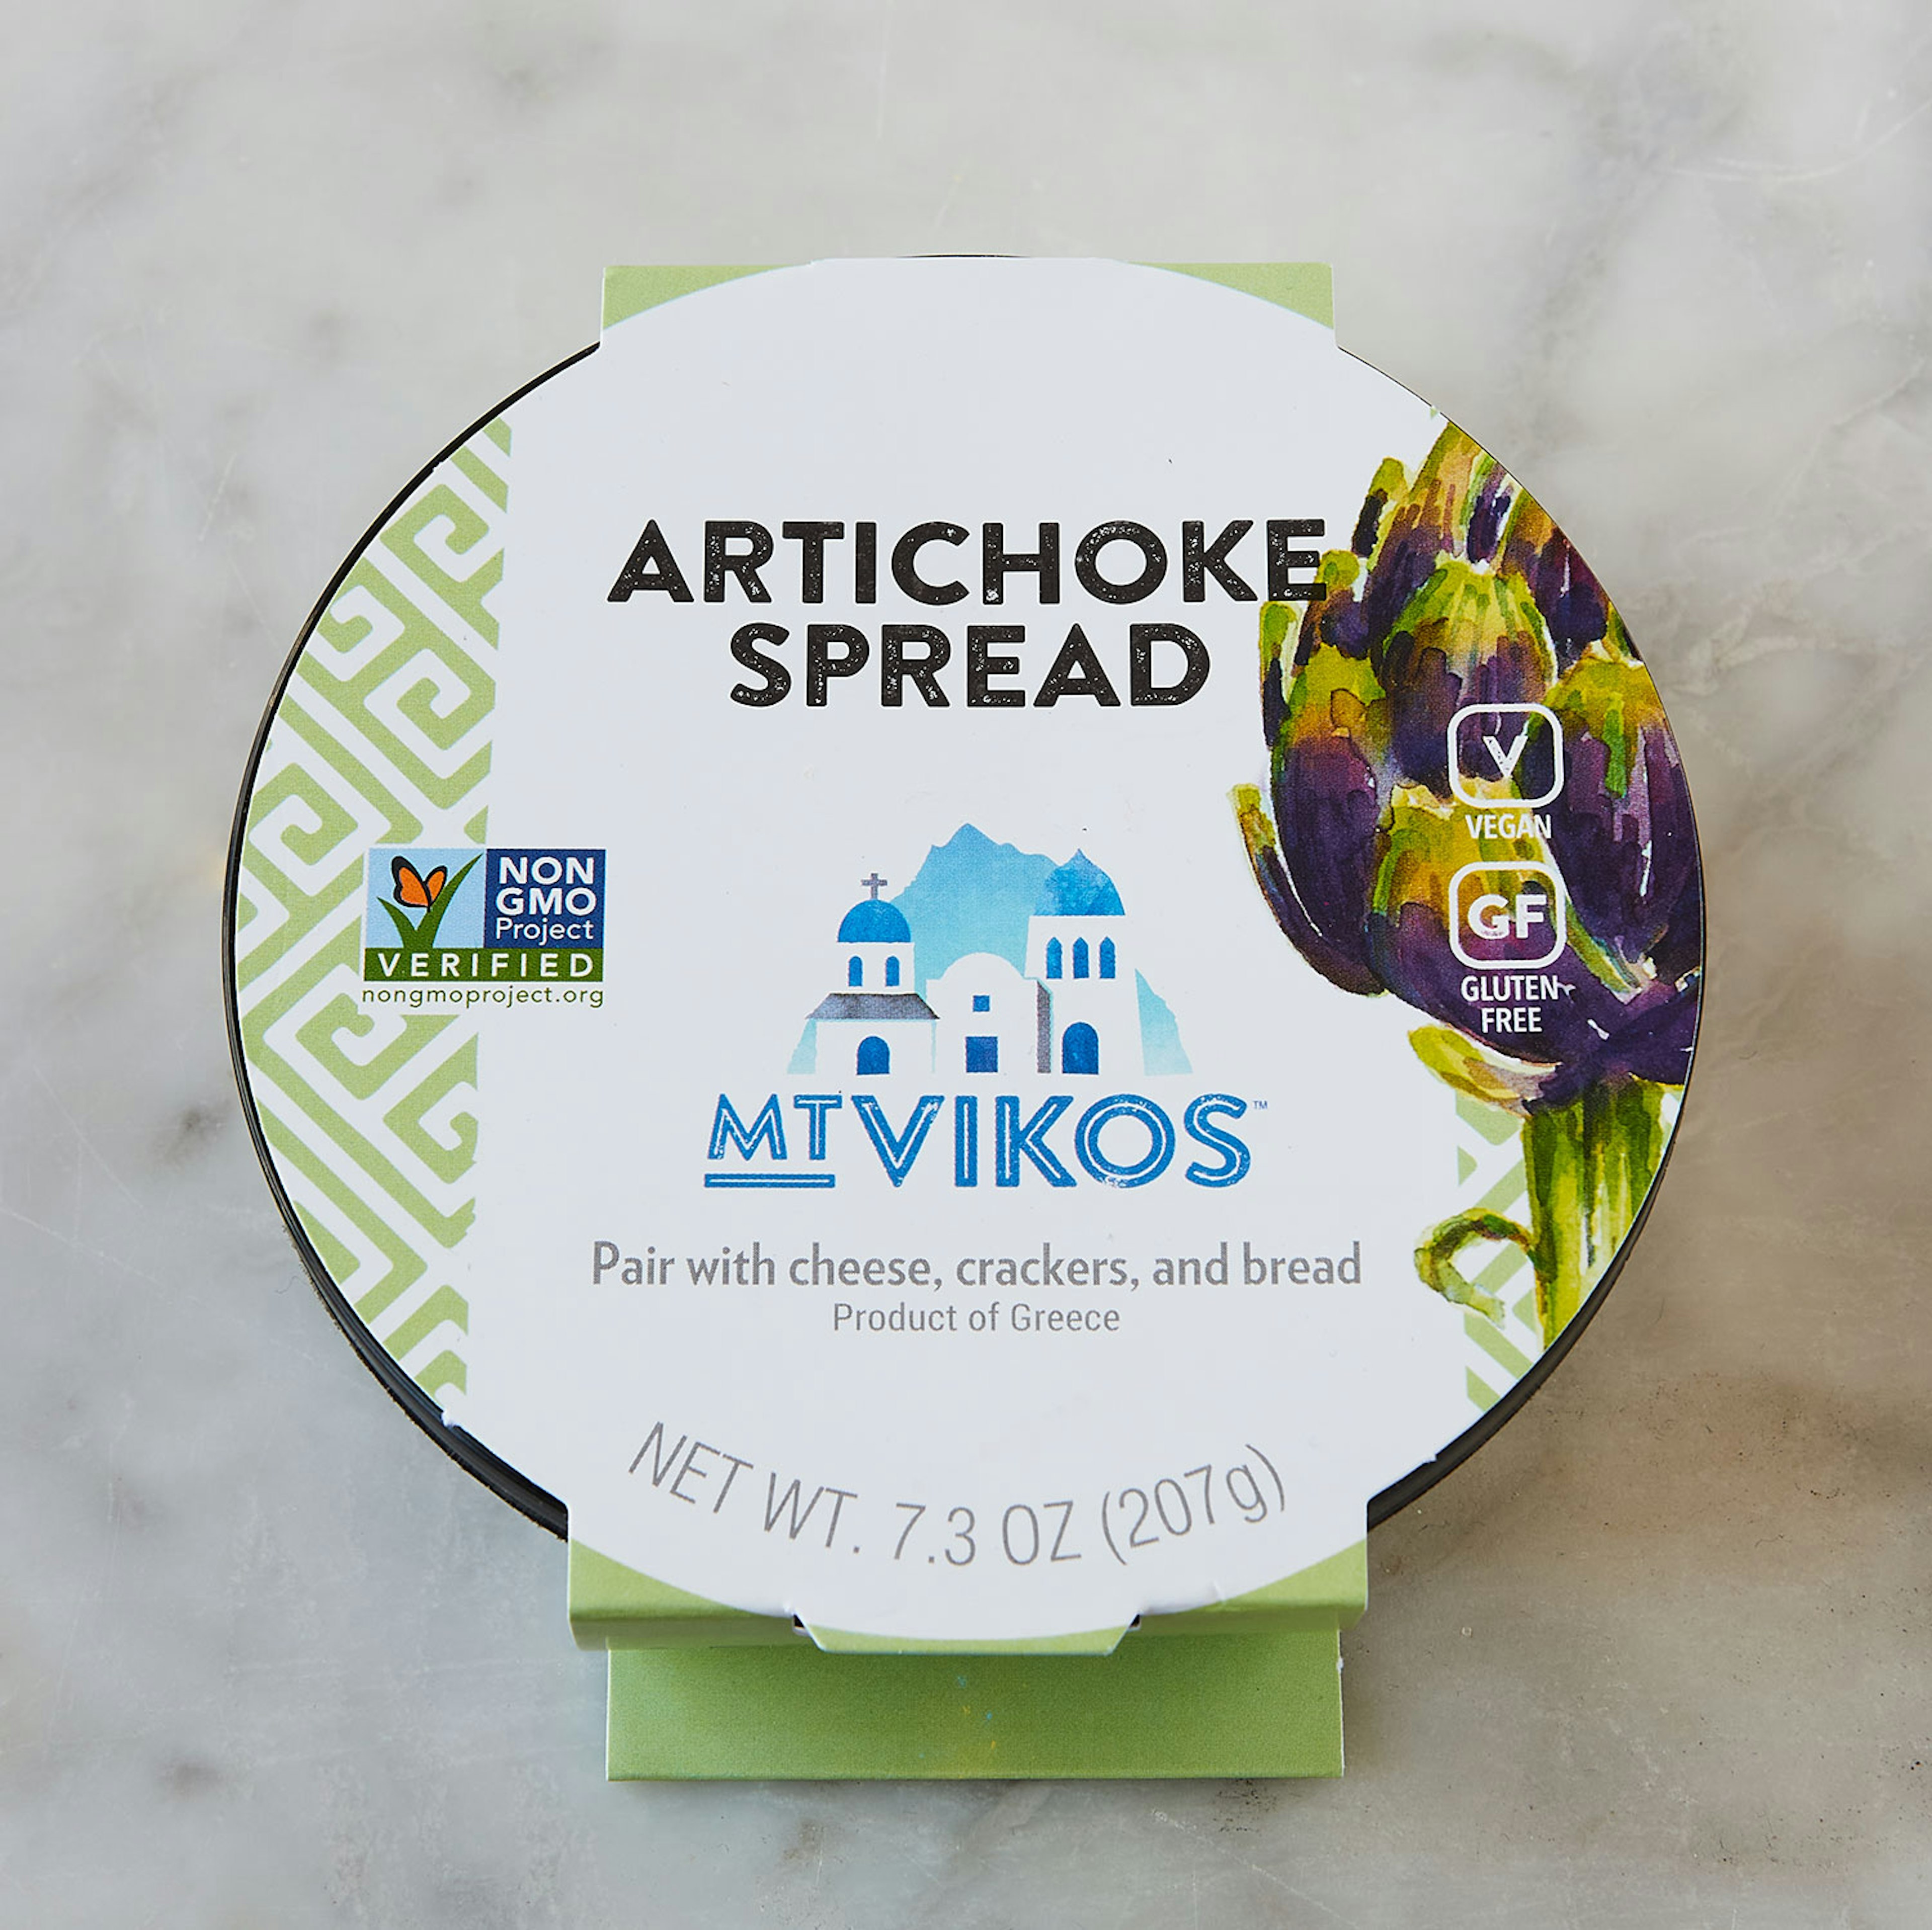 mt vikos artichoke spread specialty foods